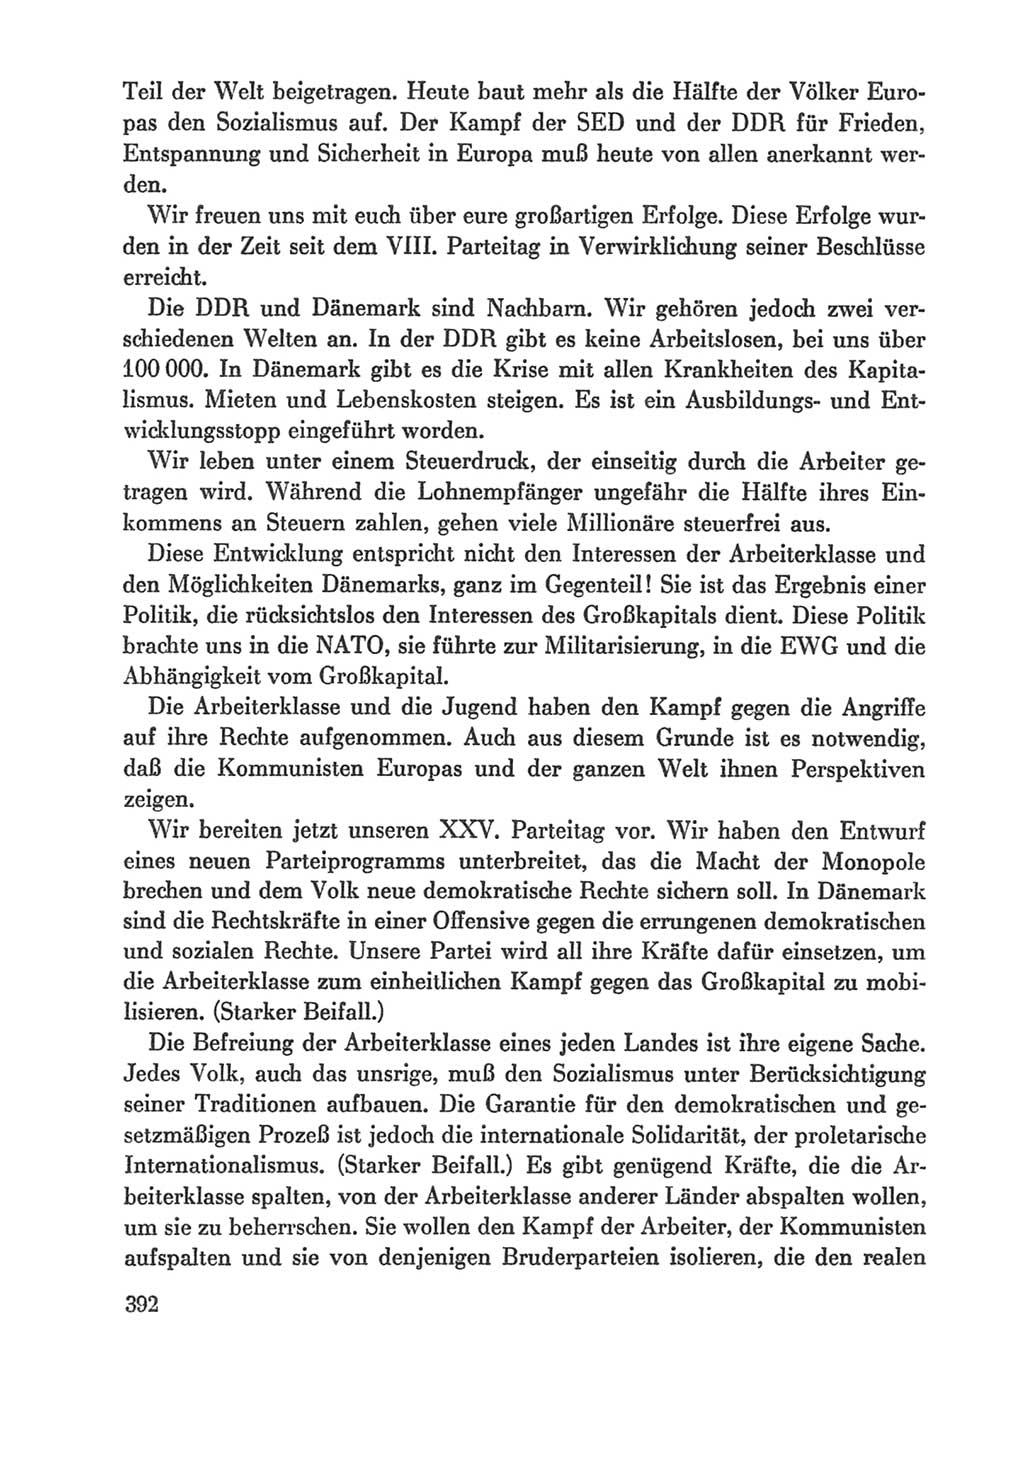 Protokoll der Verhandlungen des Ⅸ. Parteitages der Sozialistischen Einheitspartei Deutschlands (SED) [Deutsche Demokratische Republik (DDR)] 1976, Band 1, Seite 392 (Prot. Verh. Ⅸ. PT SED DDR 1976, Bd. 1, S. 392)